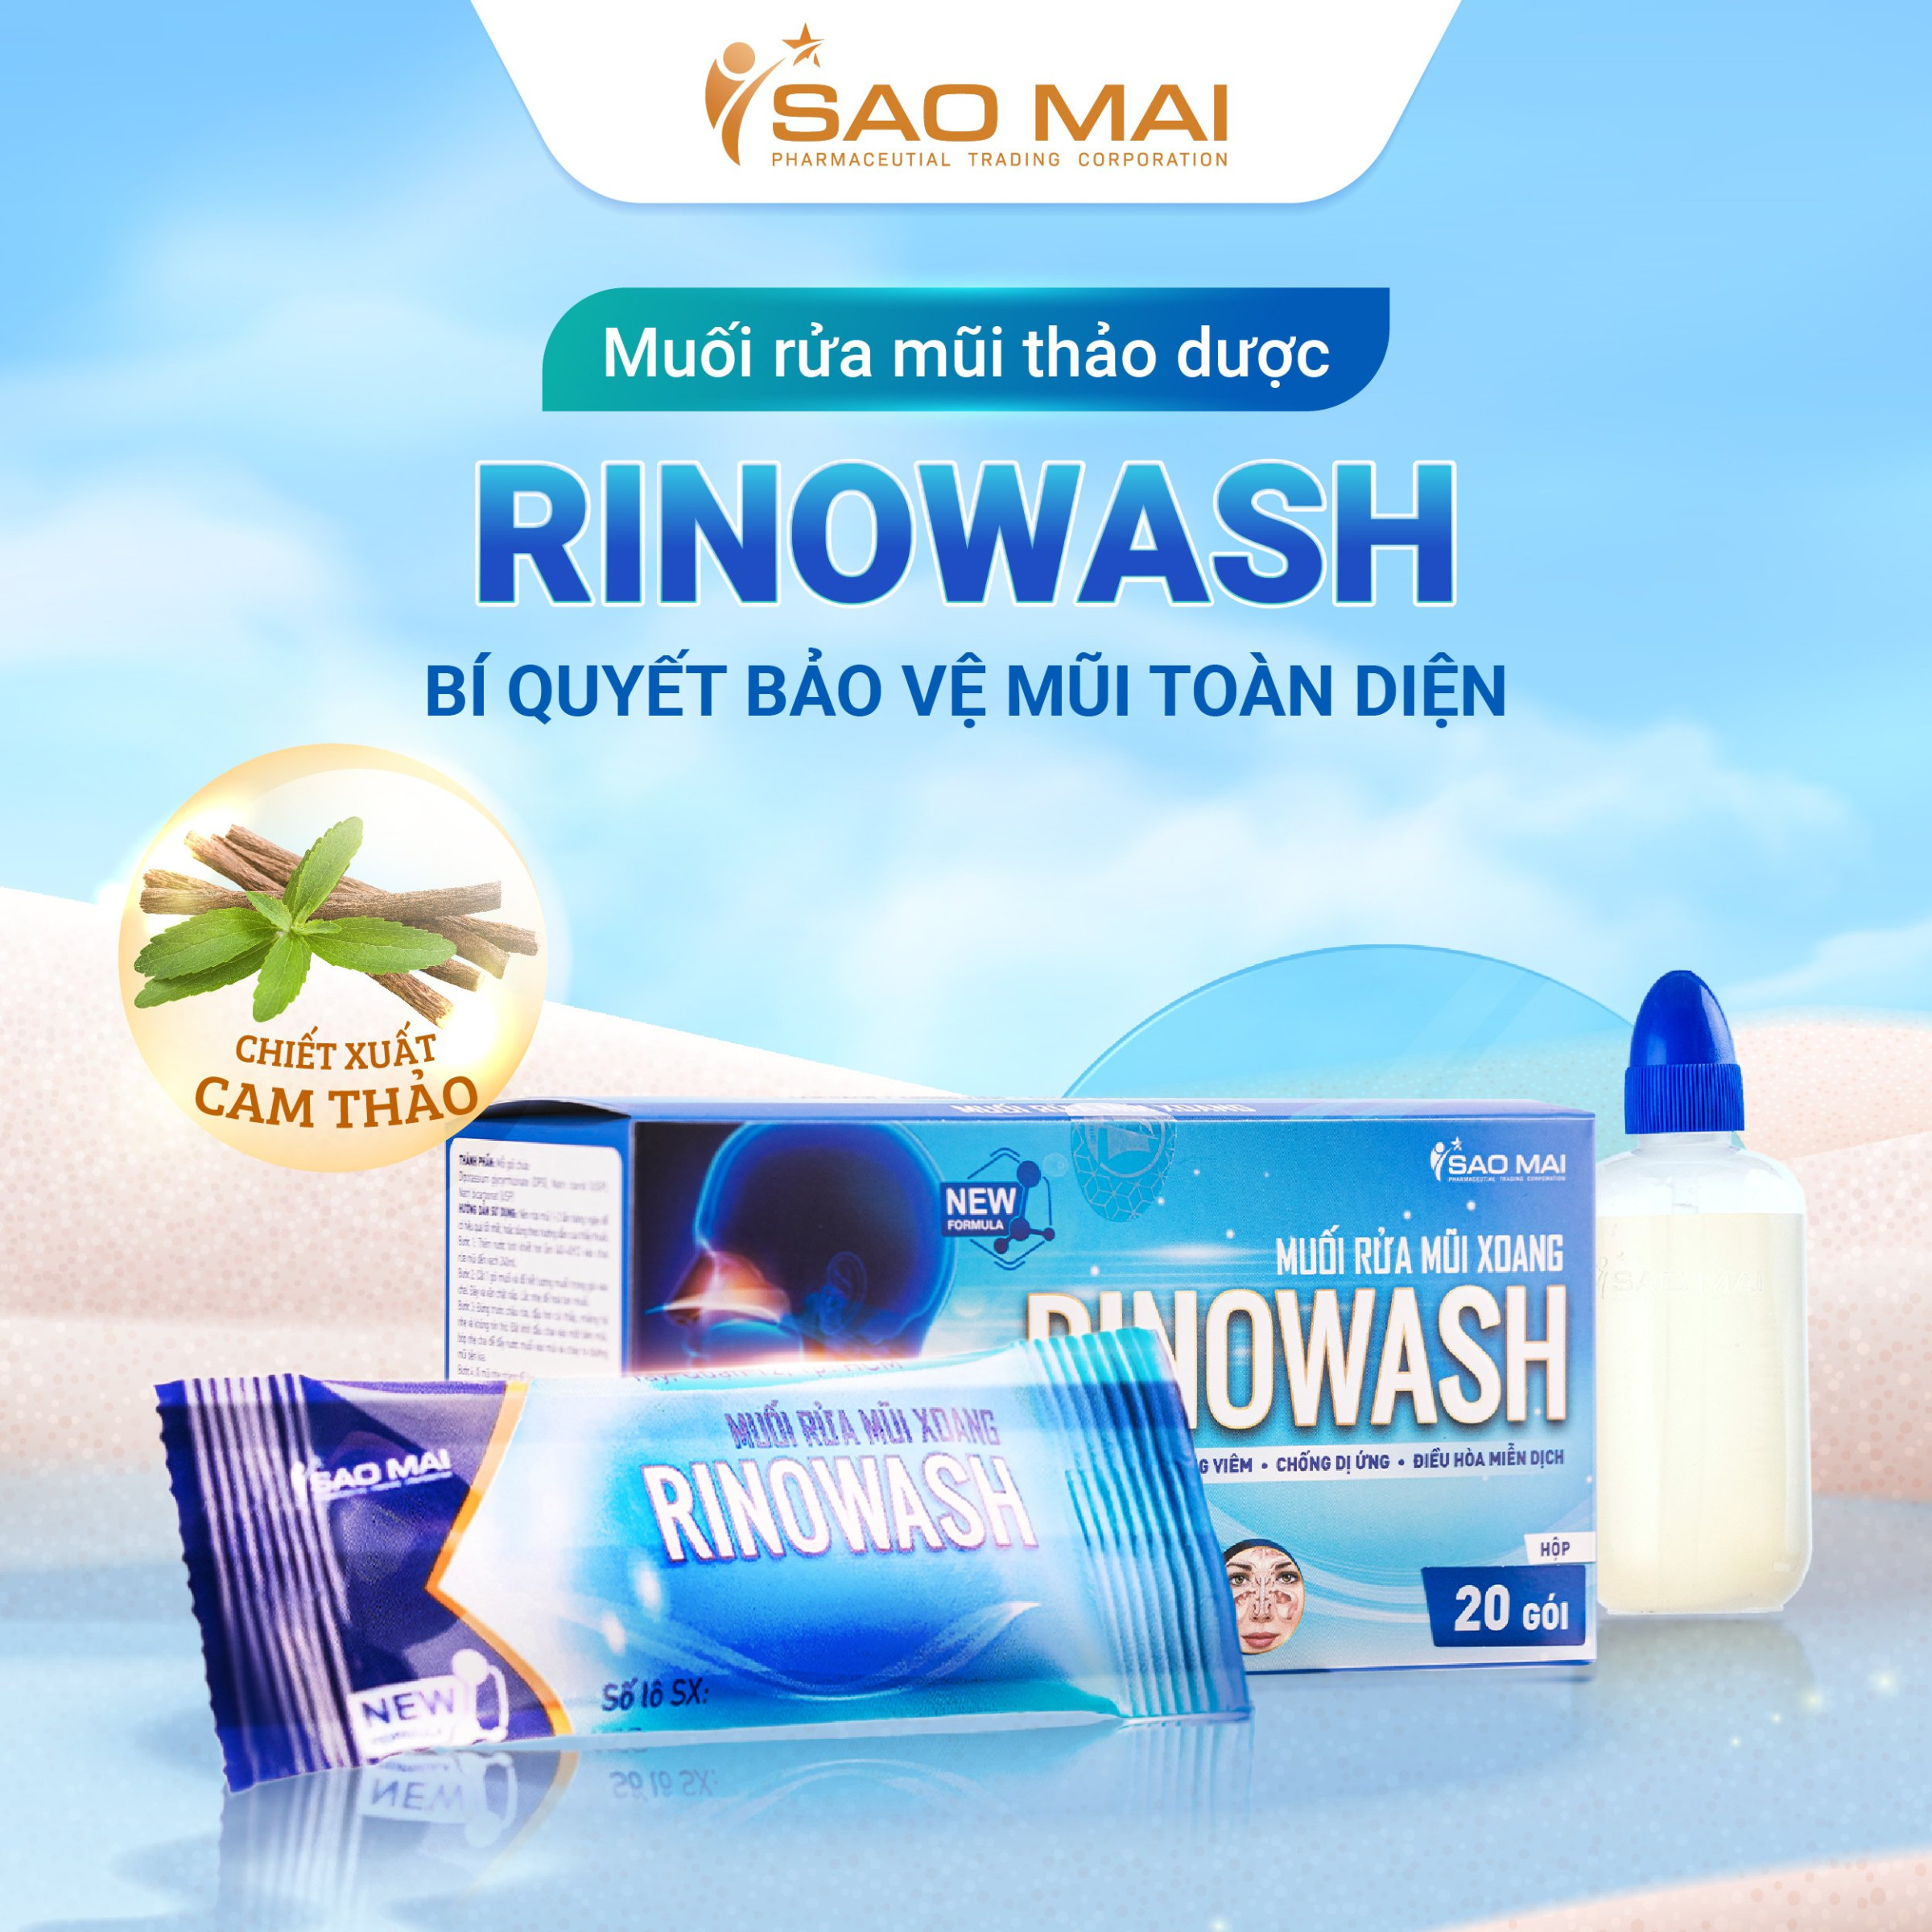 Dúng nước rửa mũi xoang Rinowash hằng ngày là một phương pháp phòng và điều trị dị ứng mũi.